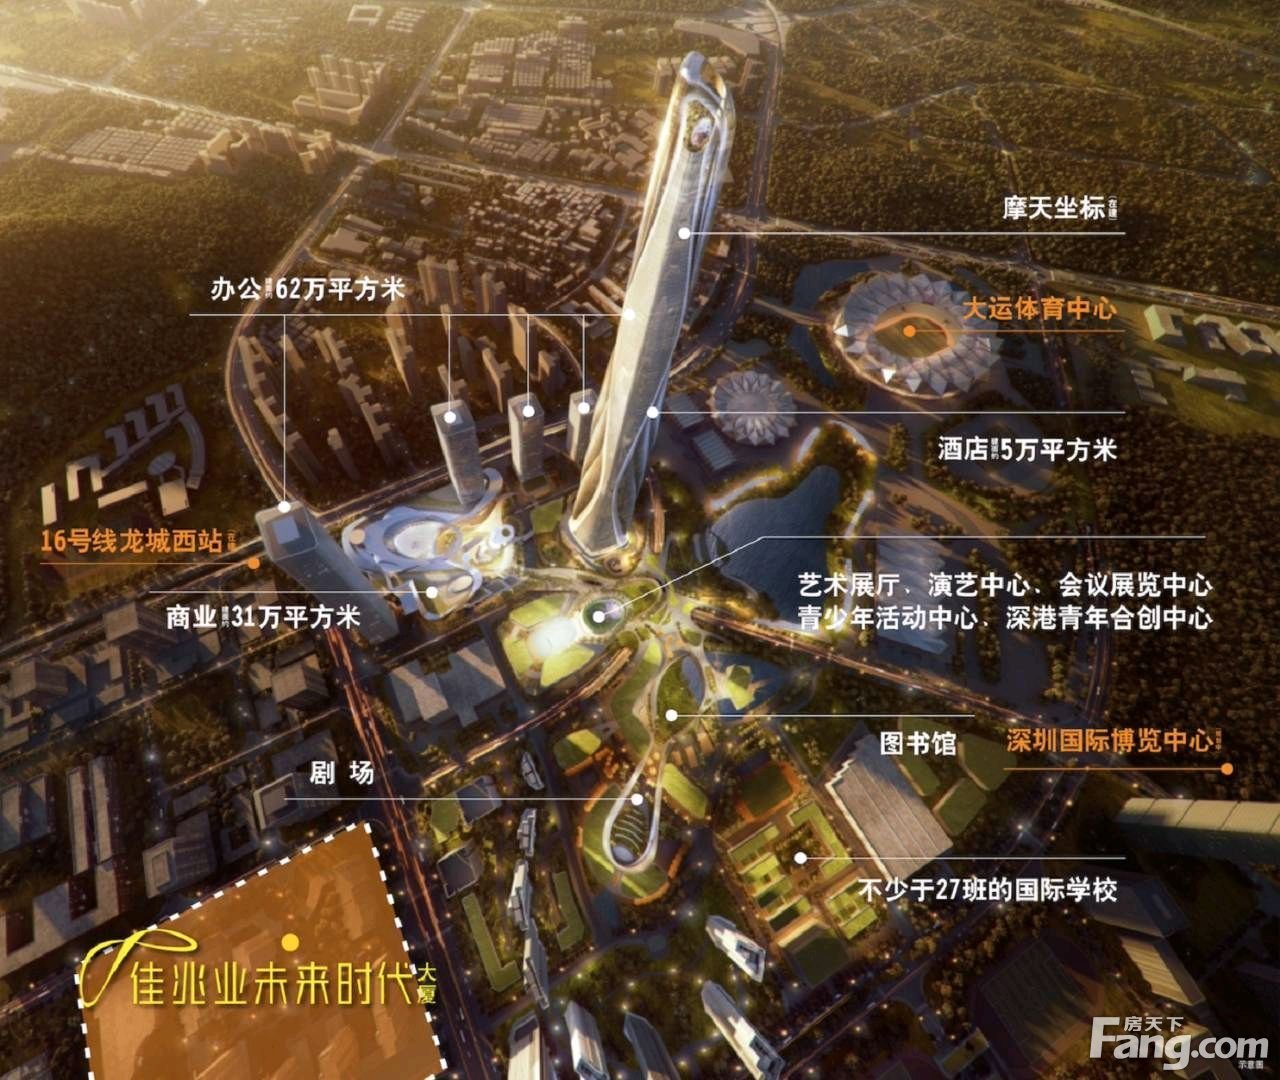 佳兆业未来时代大厦怎么样？看置业顾问田伟发布了一条项目新消息！